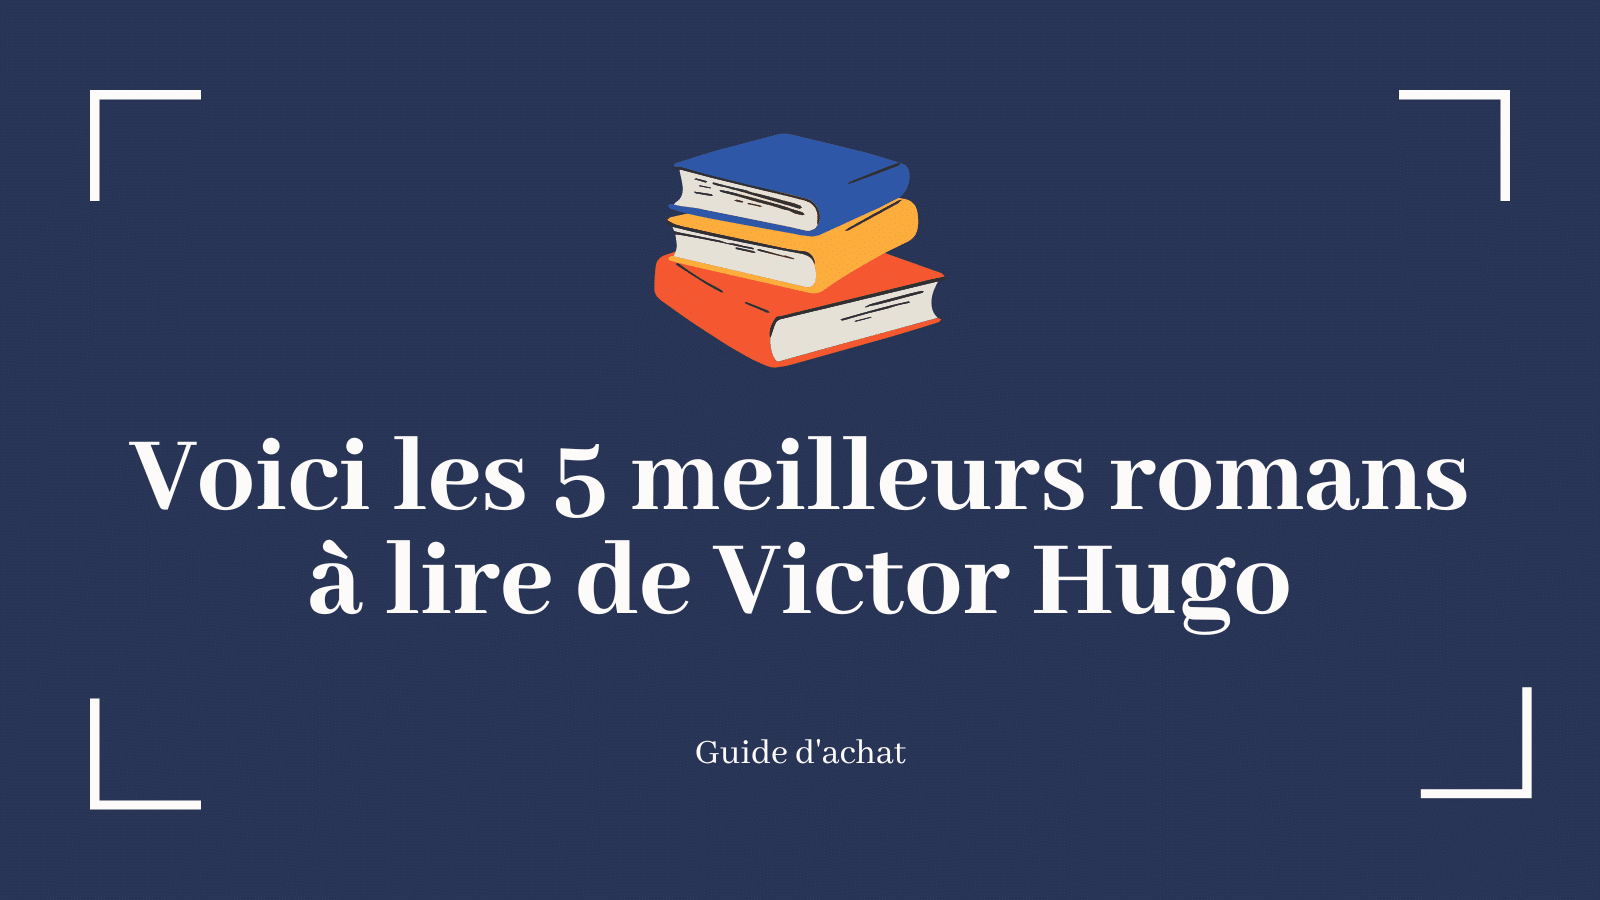 Voici les 5 meilleurs romans à lire de Victor Hugo